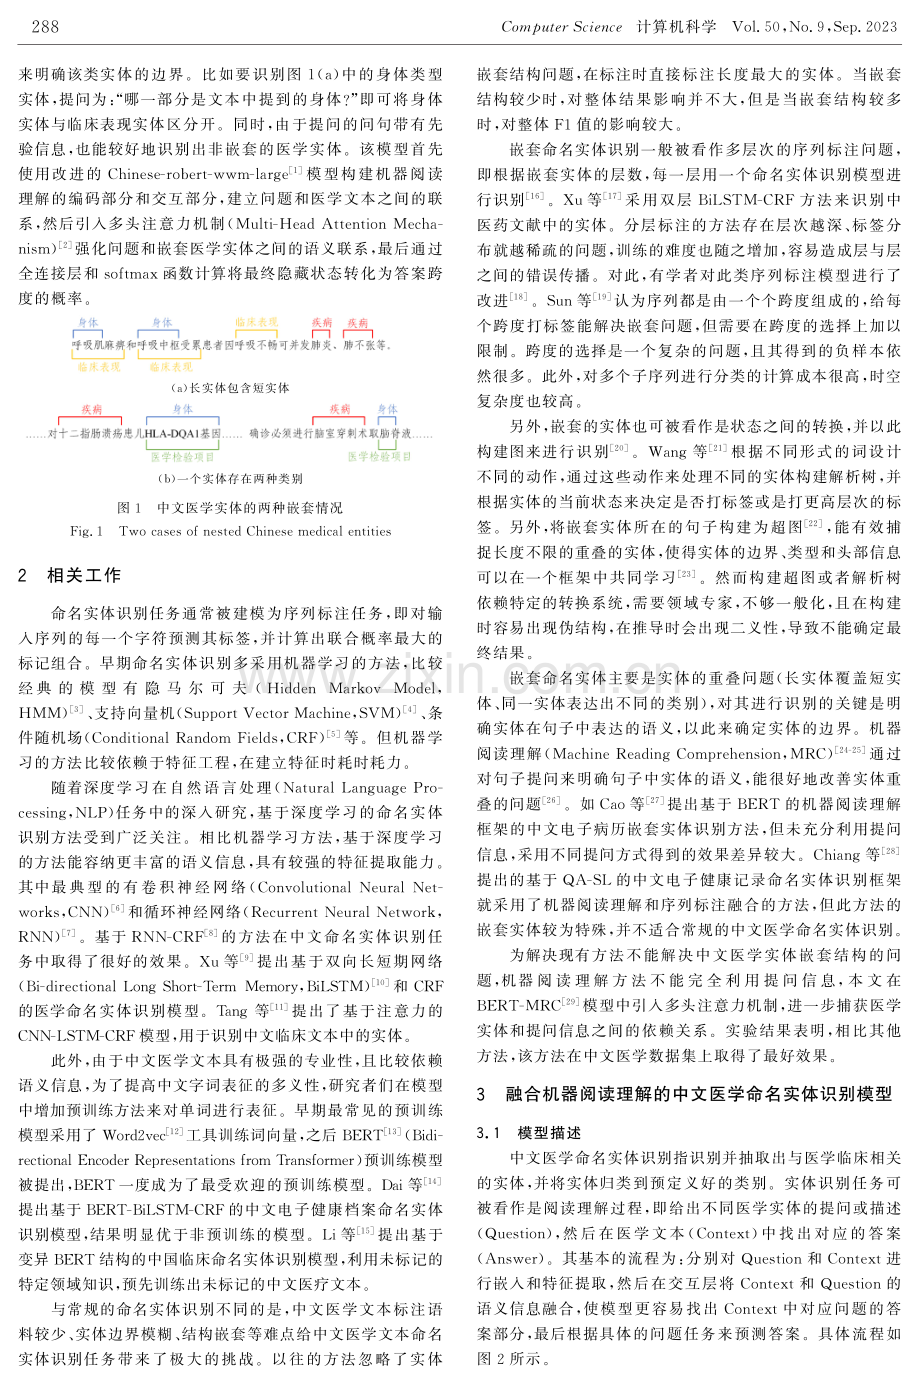 融合机器阅读理解的中文医学命名实体识别方法.pdf_第2页